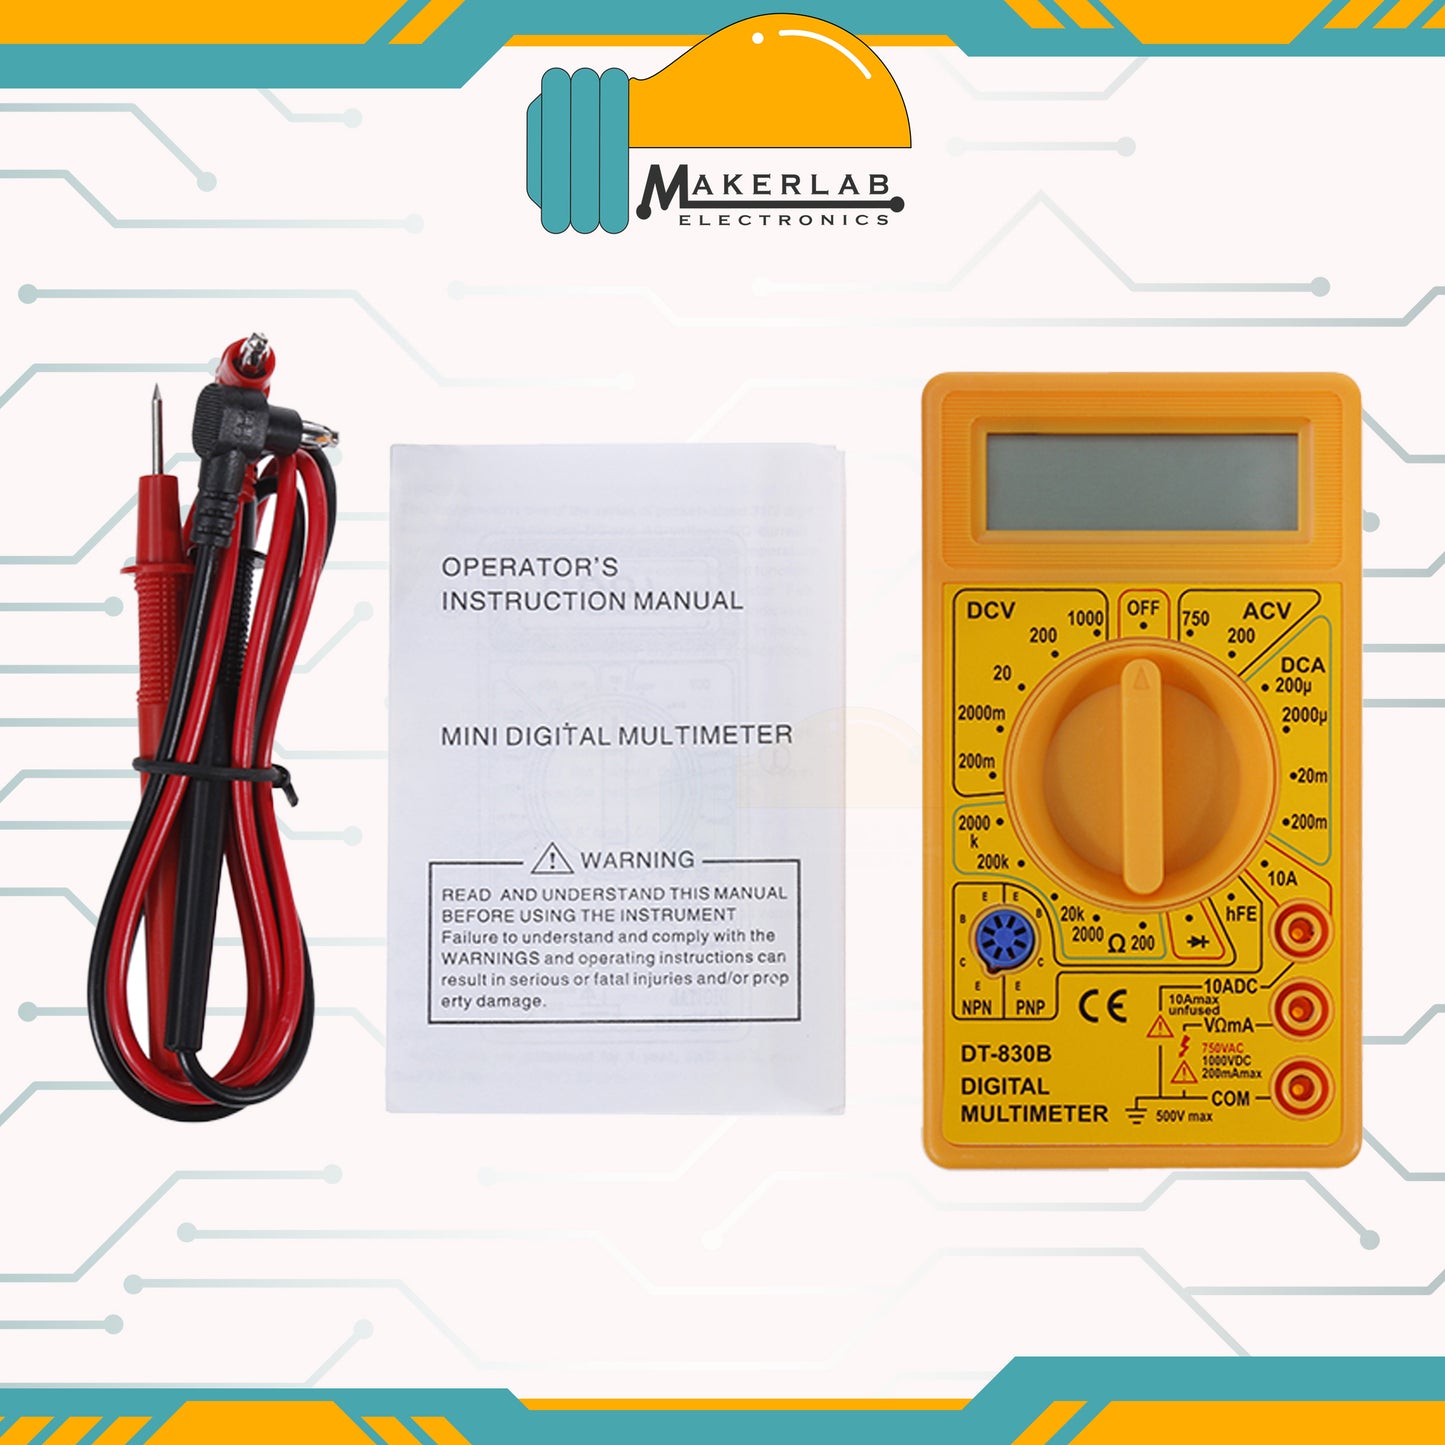 DT-830B / DT-830D Digital Multimeter LCD AC/DC 750/1000v Mini Portable Multimeter for OHM Voltmeter